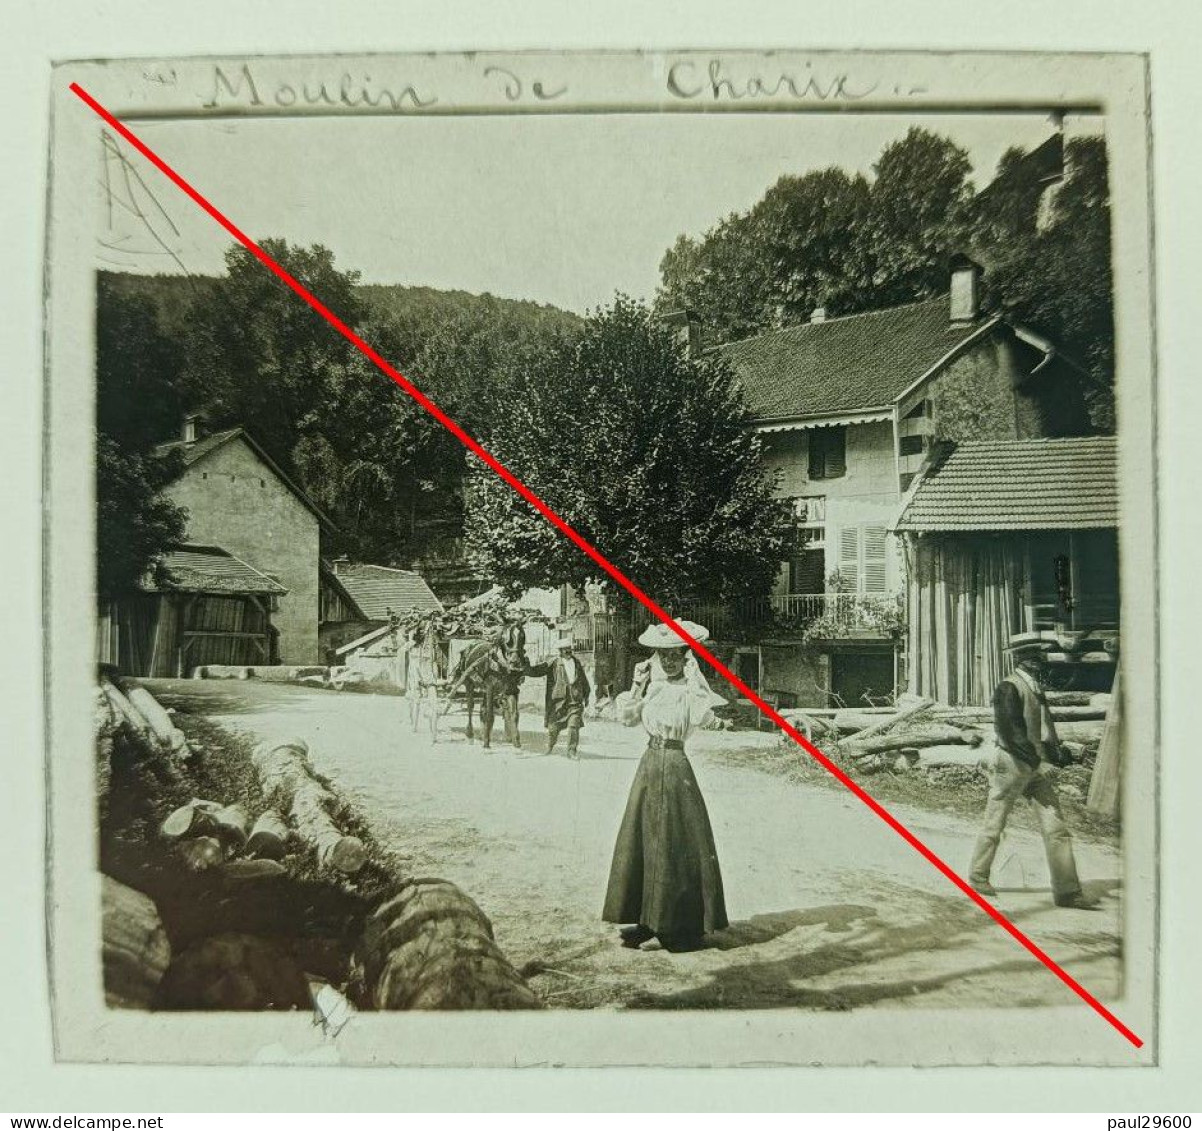 Photo Sur Plaque De Verre, L'ain, Moulin De Charix, Village, Maison, Rue, Attelage, Hangars, Bâtiments, Années 1930. - Glasdias